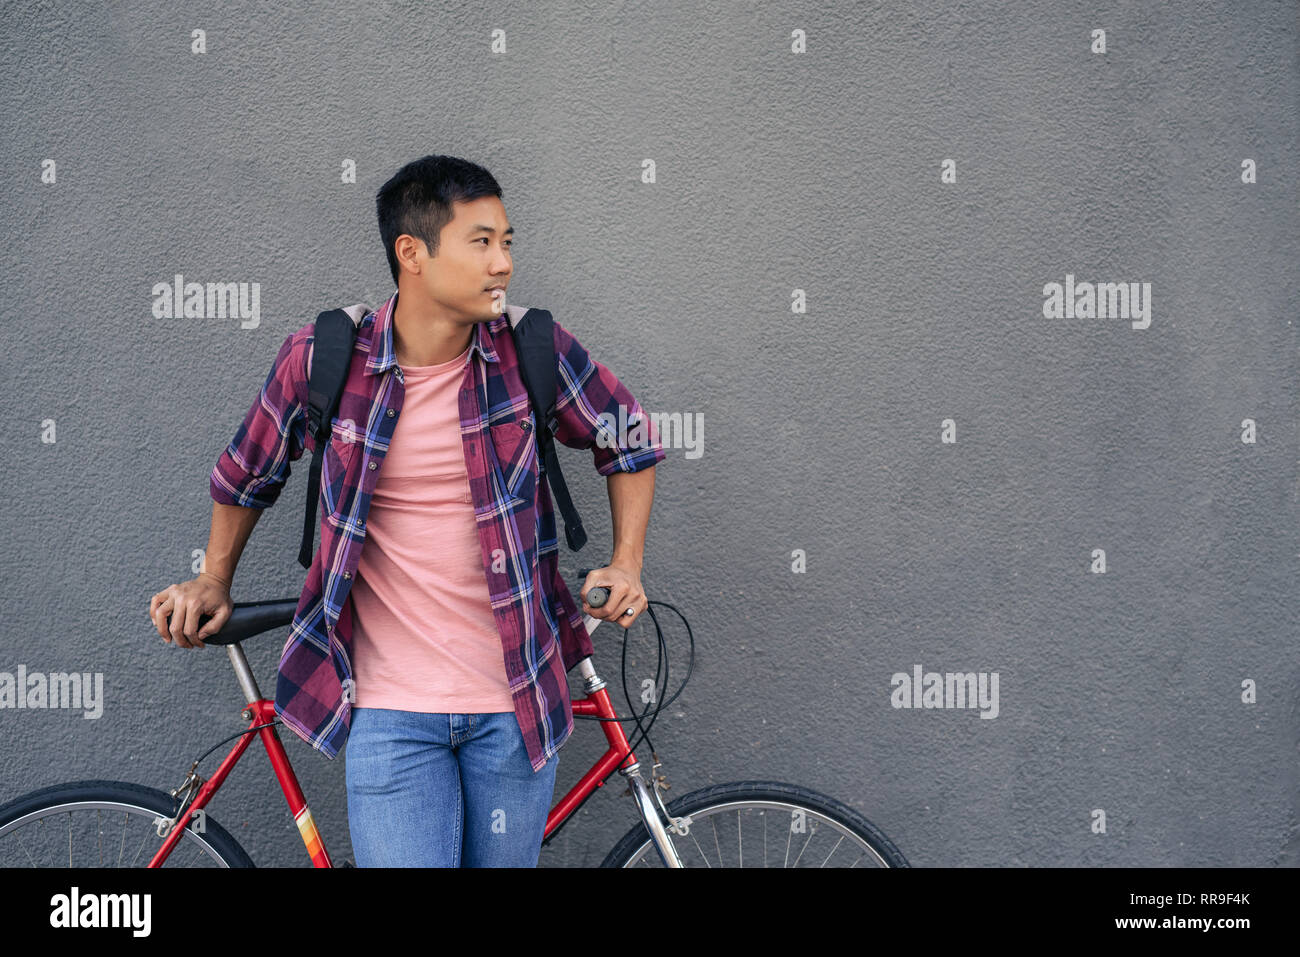 Junge Mann lehnt mit seinem Fahrrad gegen eine graue Wand Stockfoto